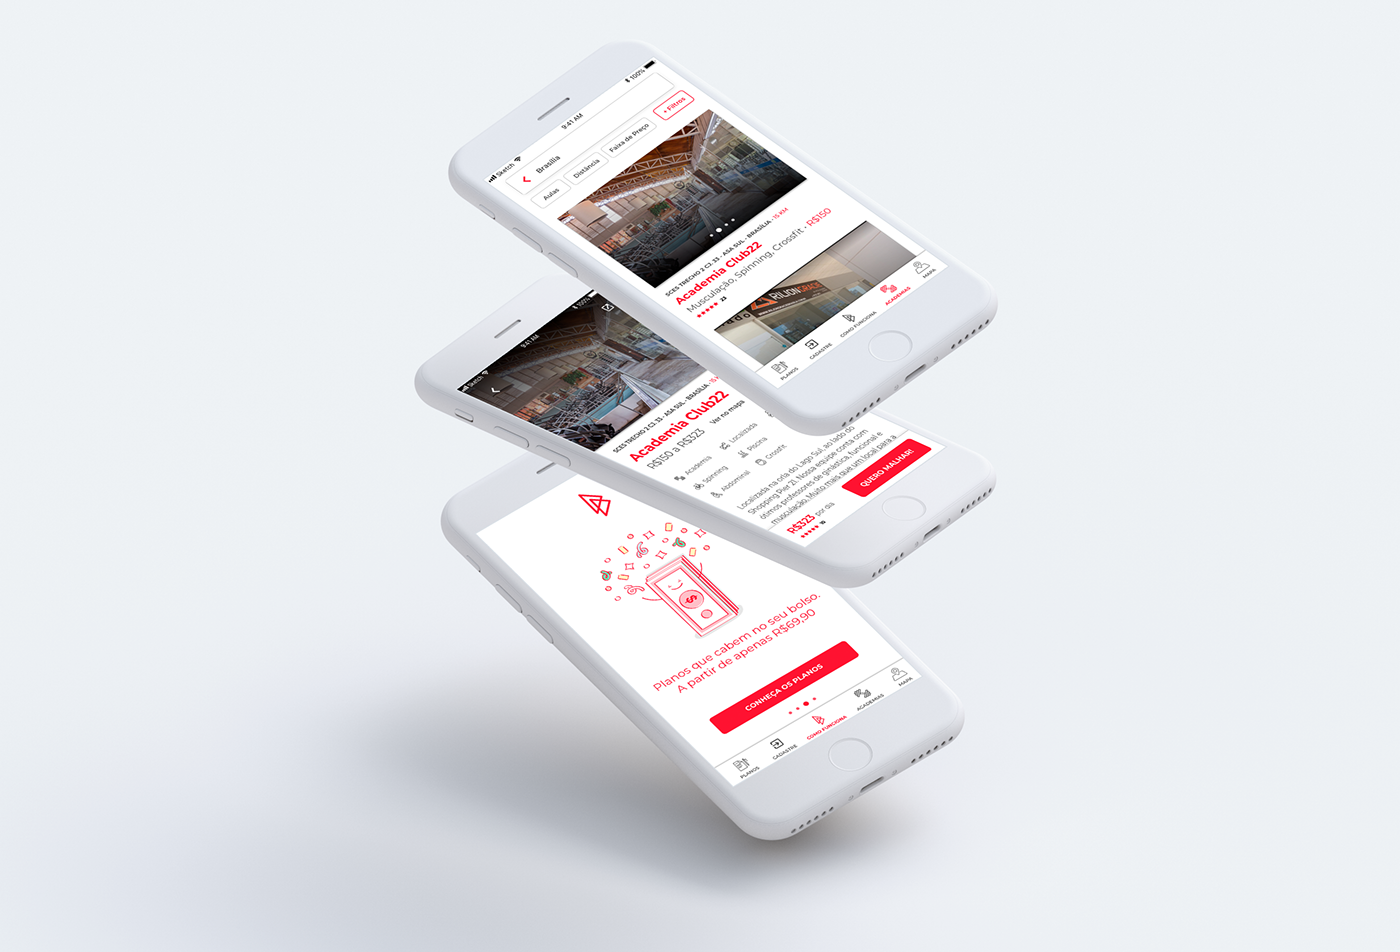 UI ux prototype redesign app design product design 